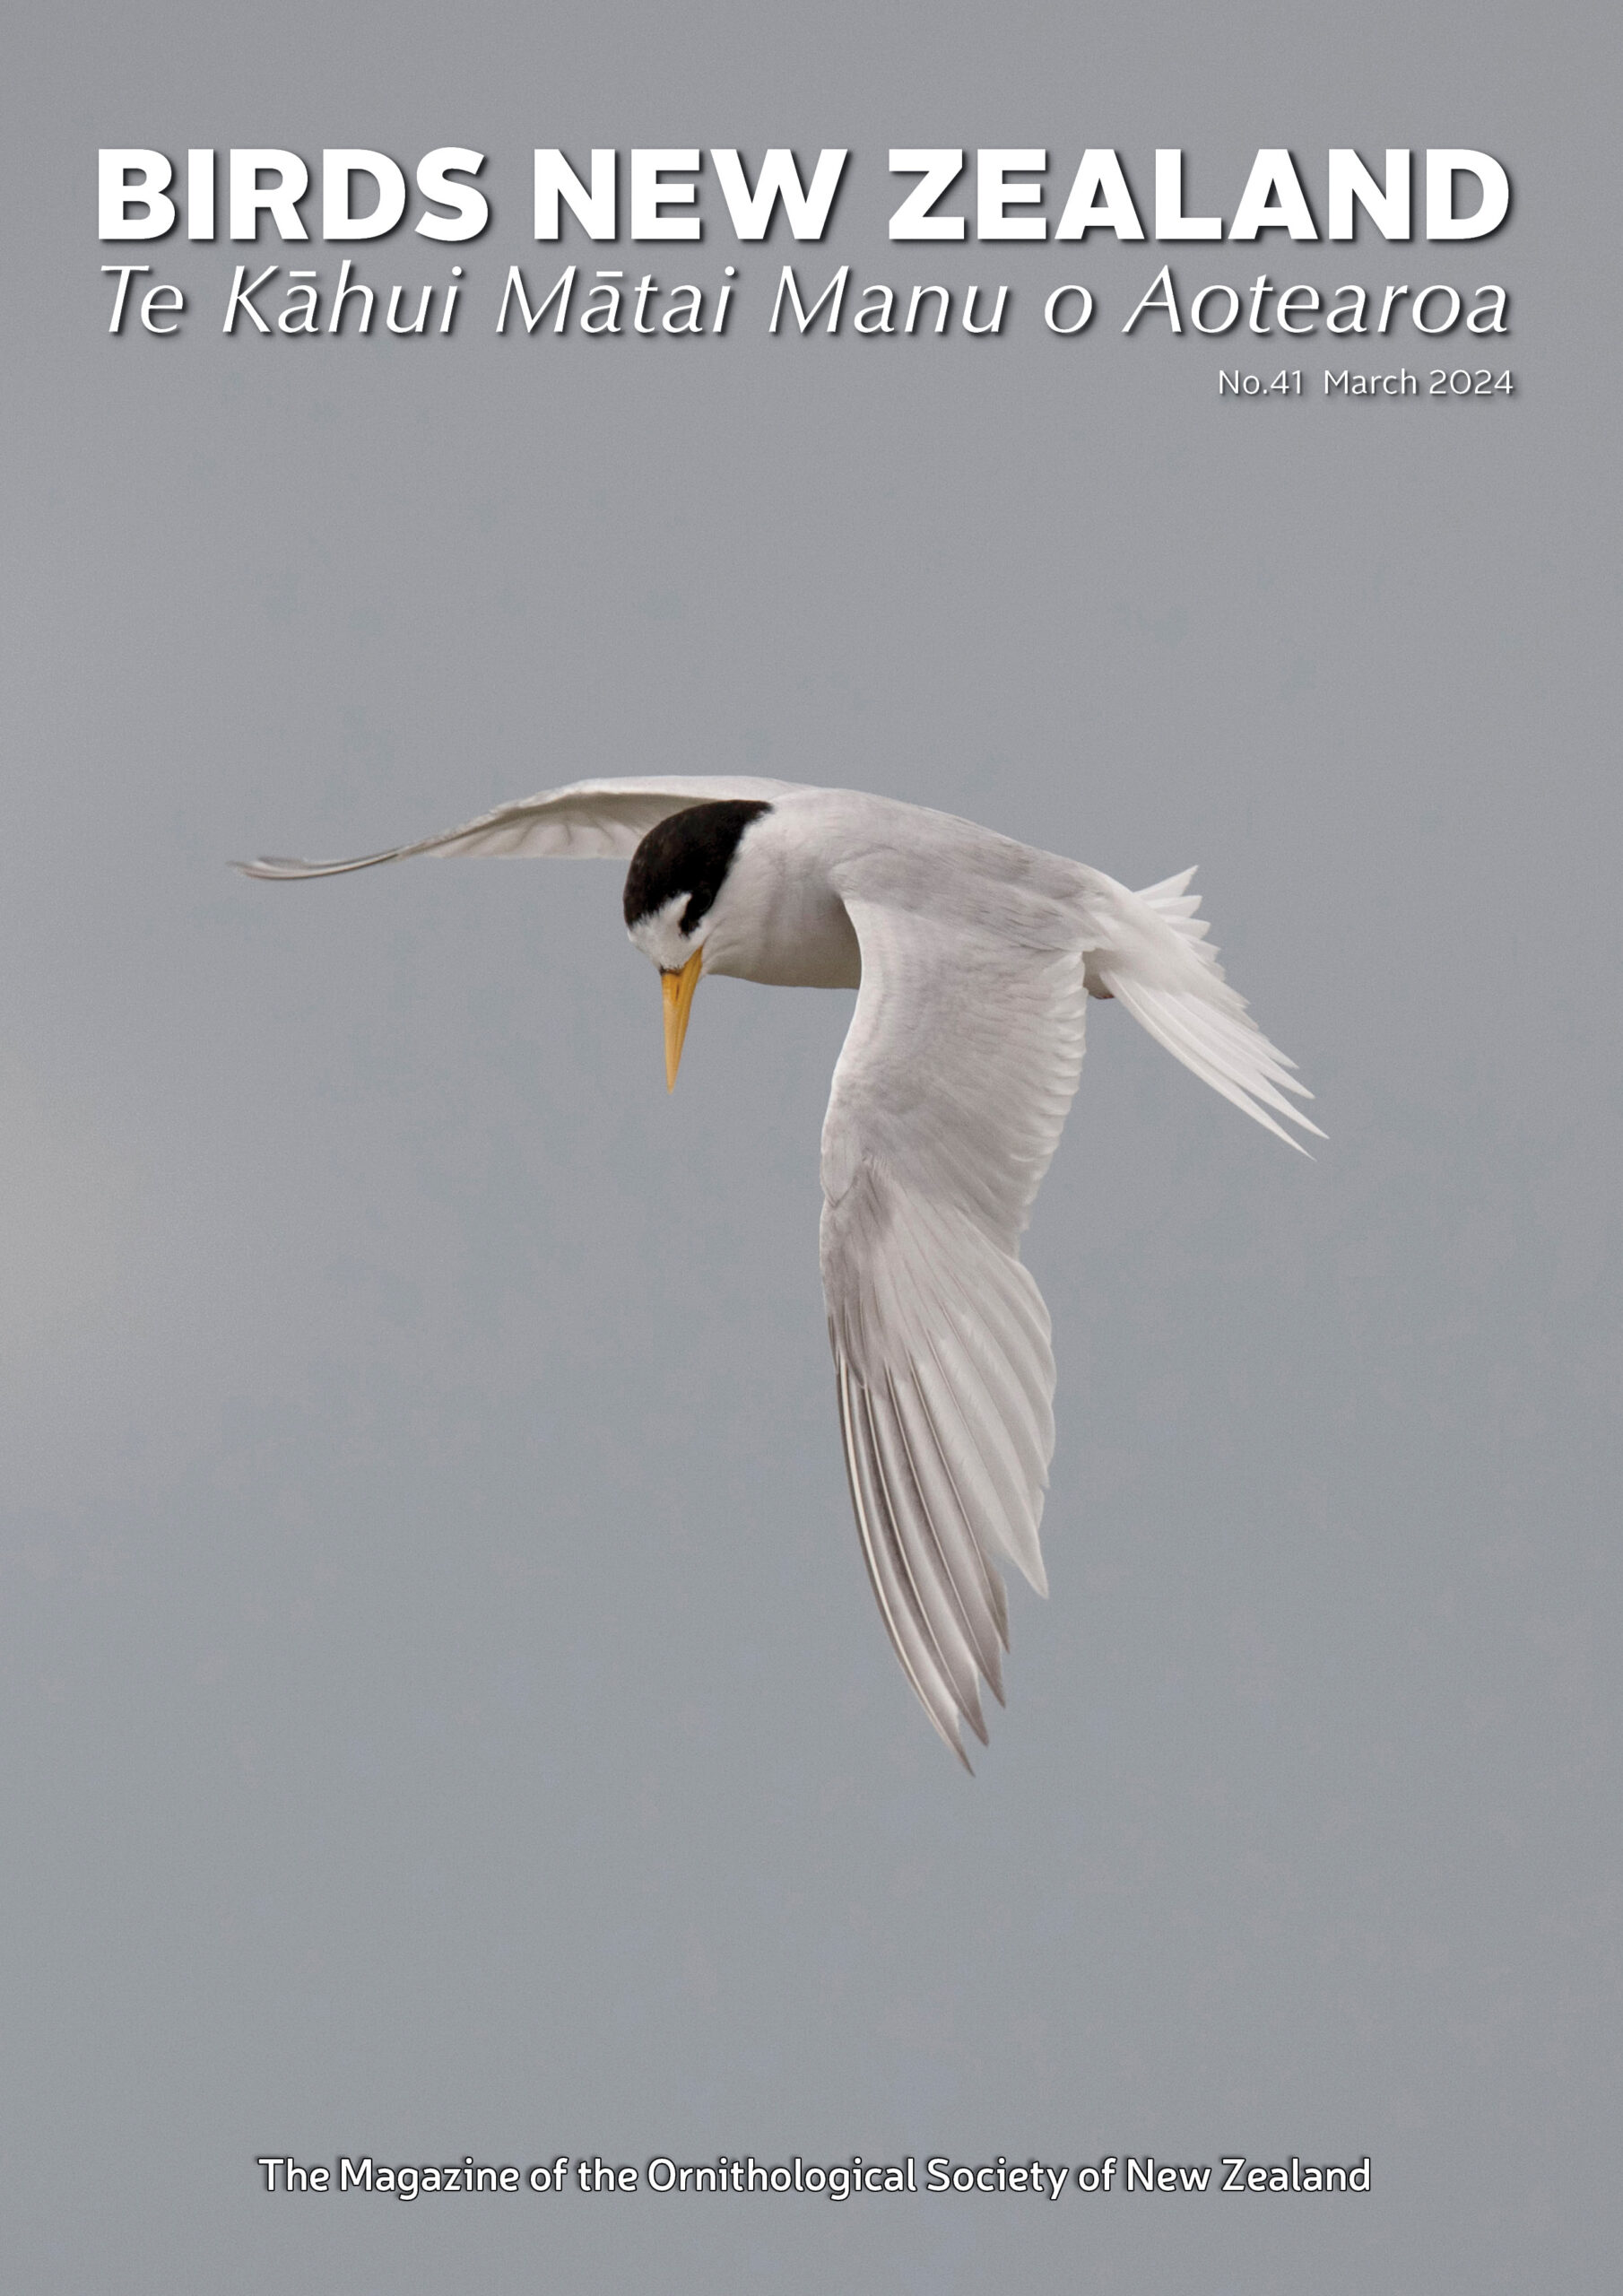 March Birds New Zealand magazine published